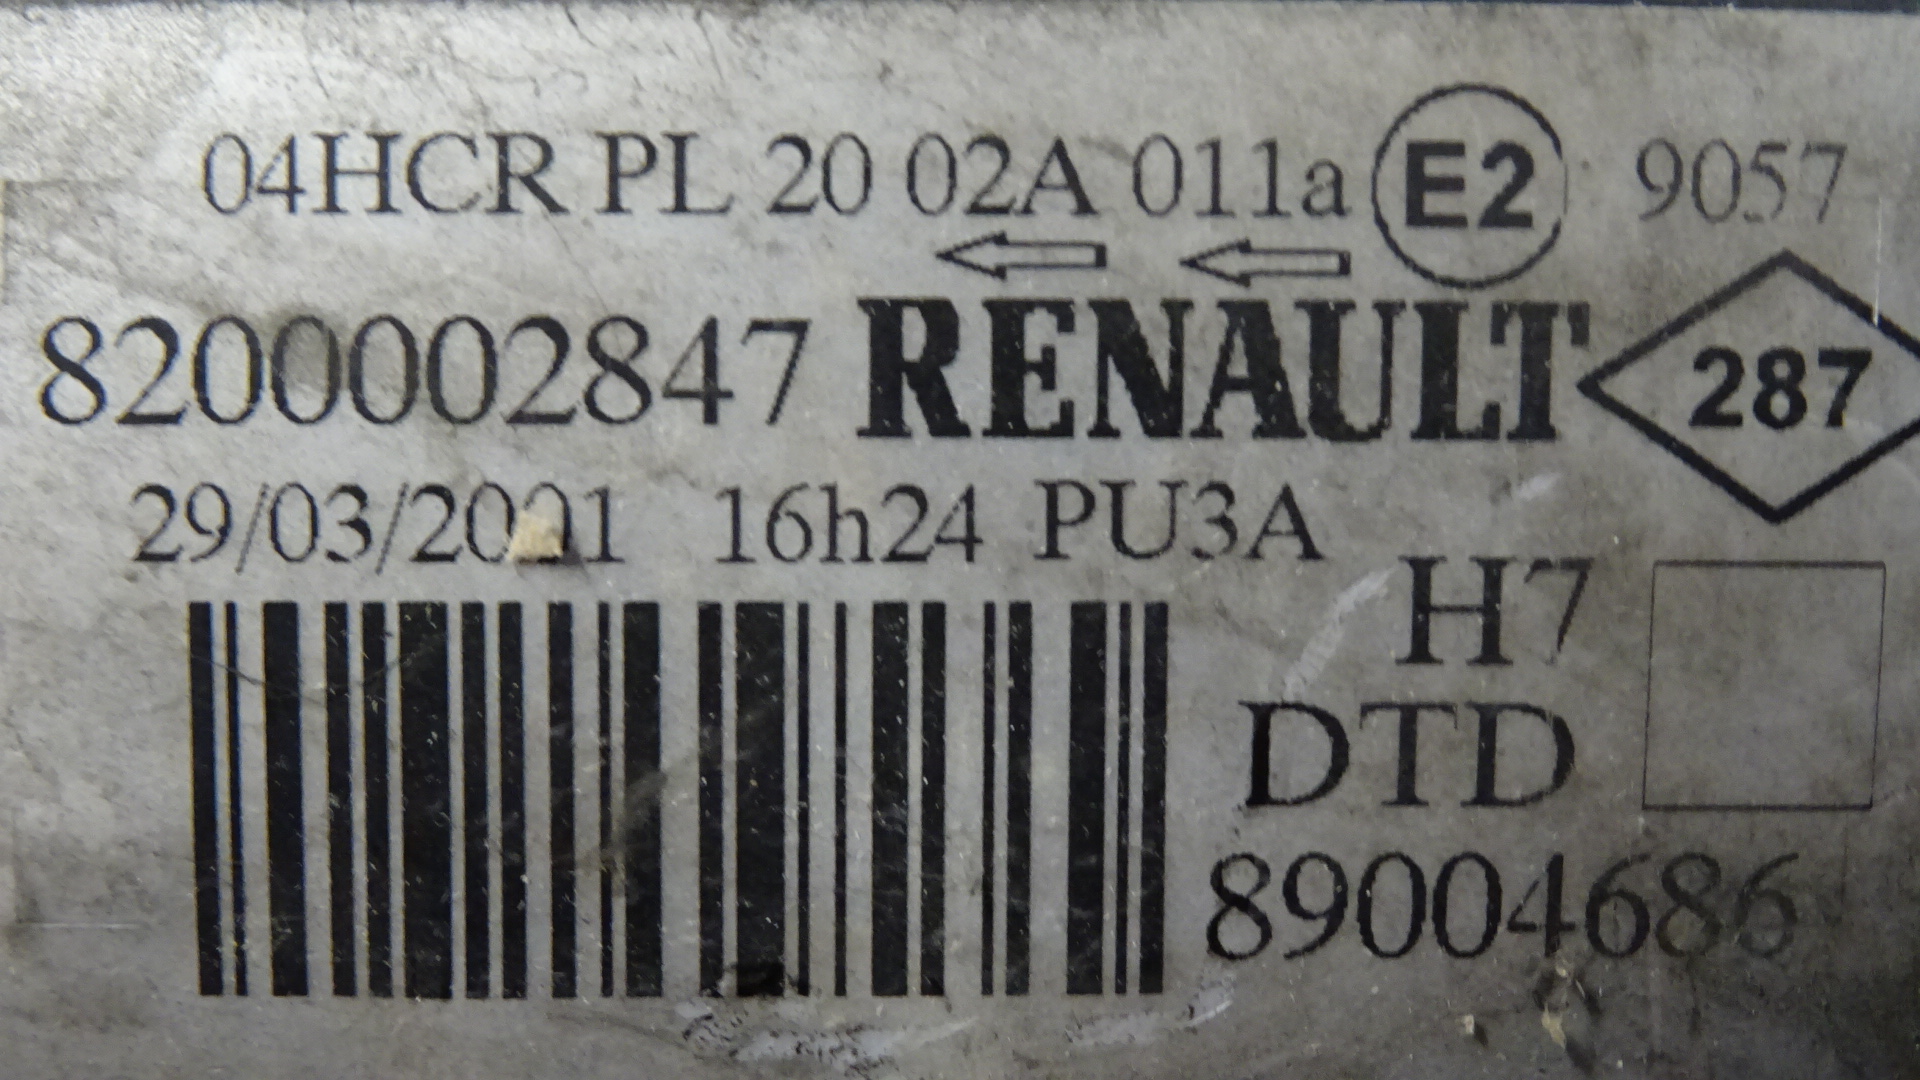 Hauptscheinwerfer Frontscheinwerfer rechts Renault Laguna II Bj.2001 Valeo: 89003522 Renault: 8200002847